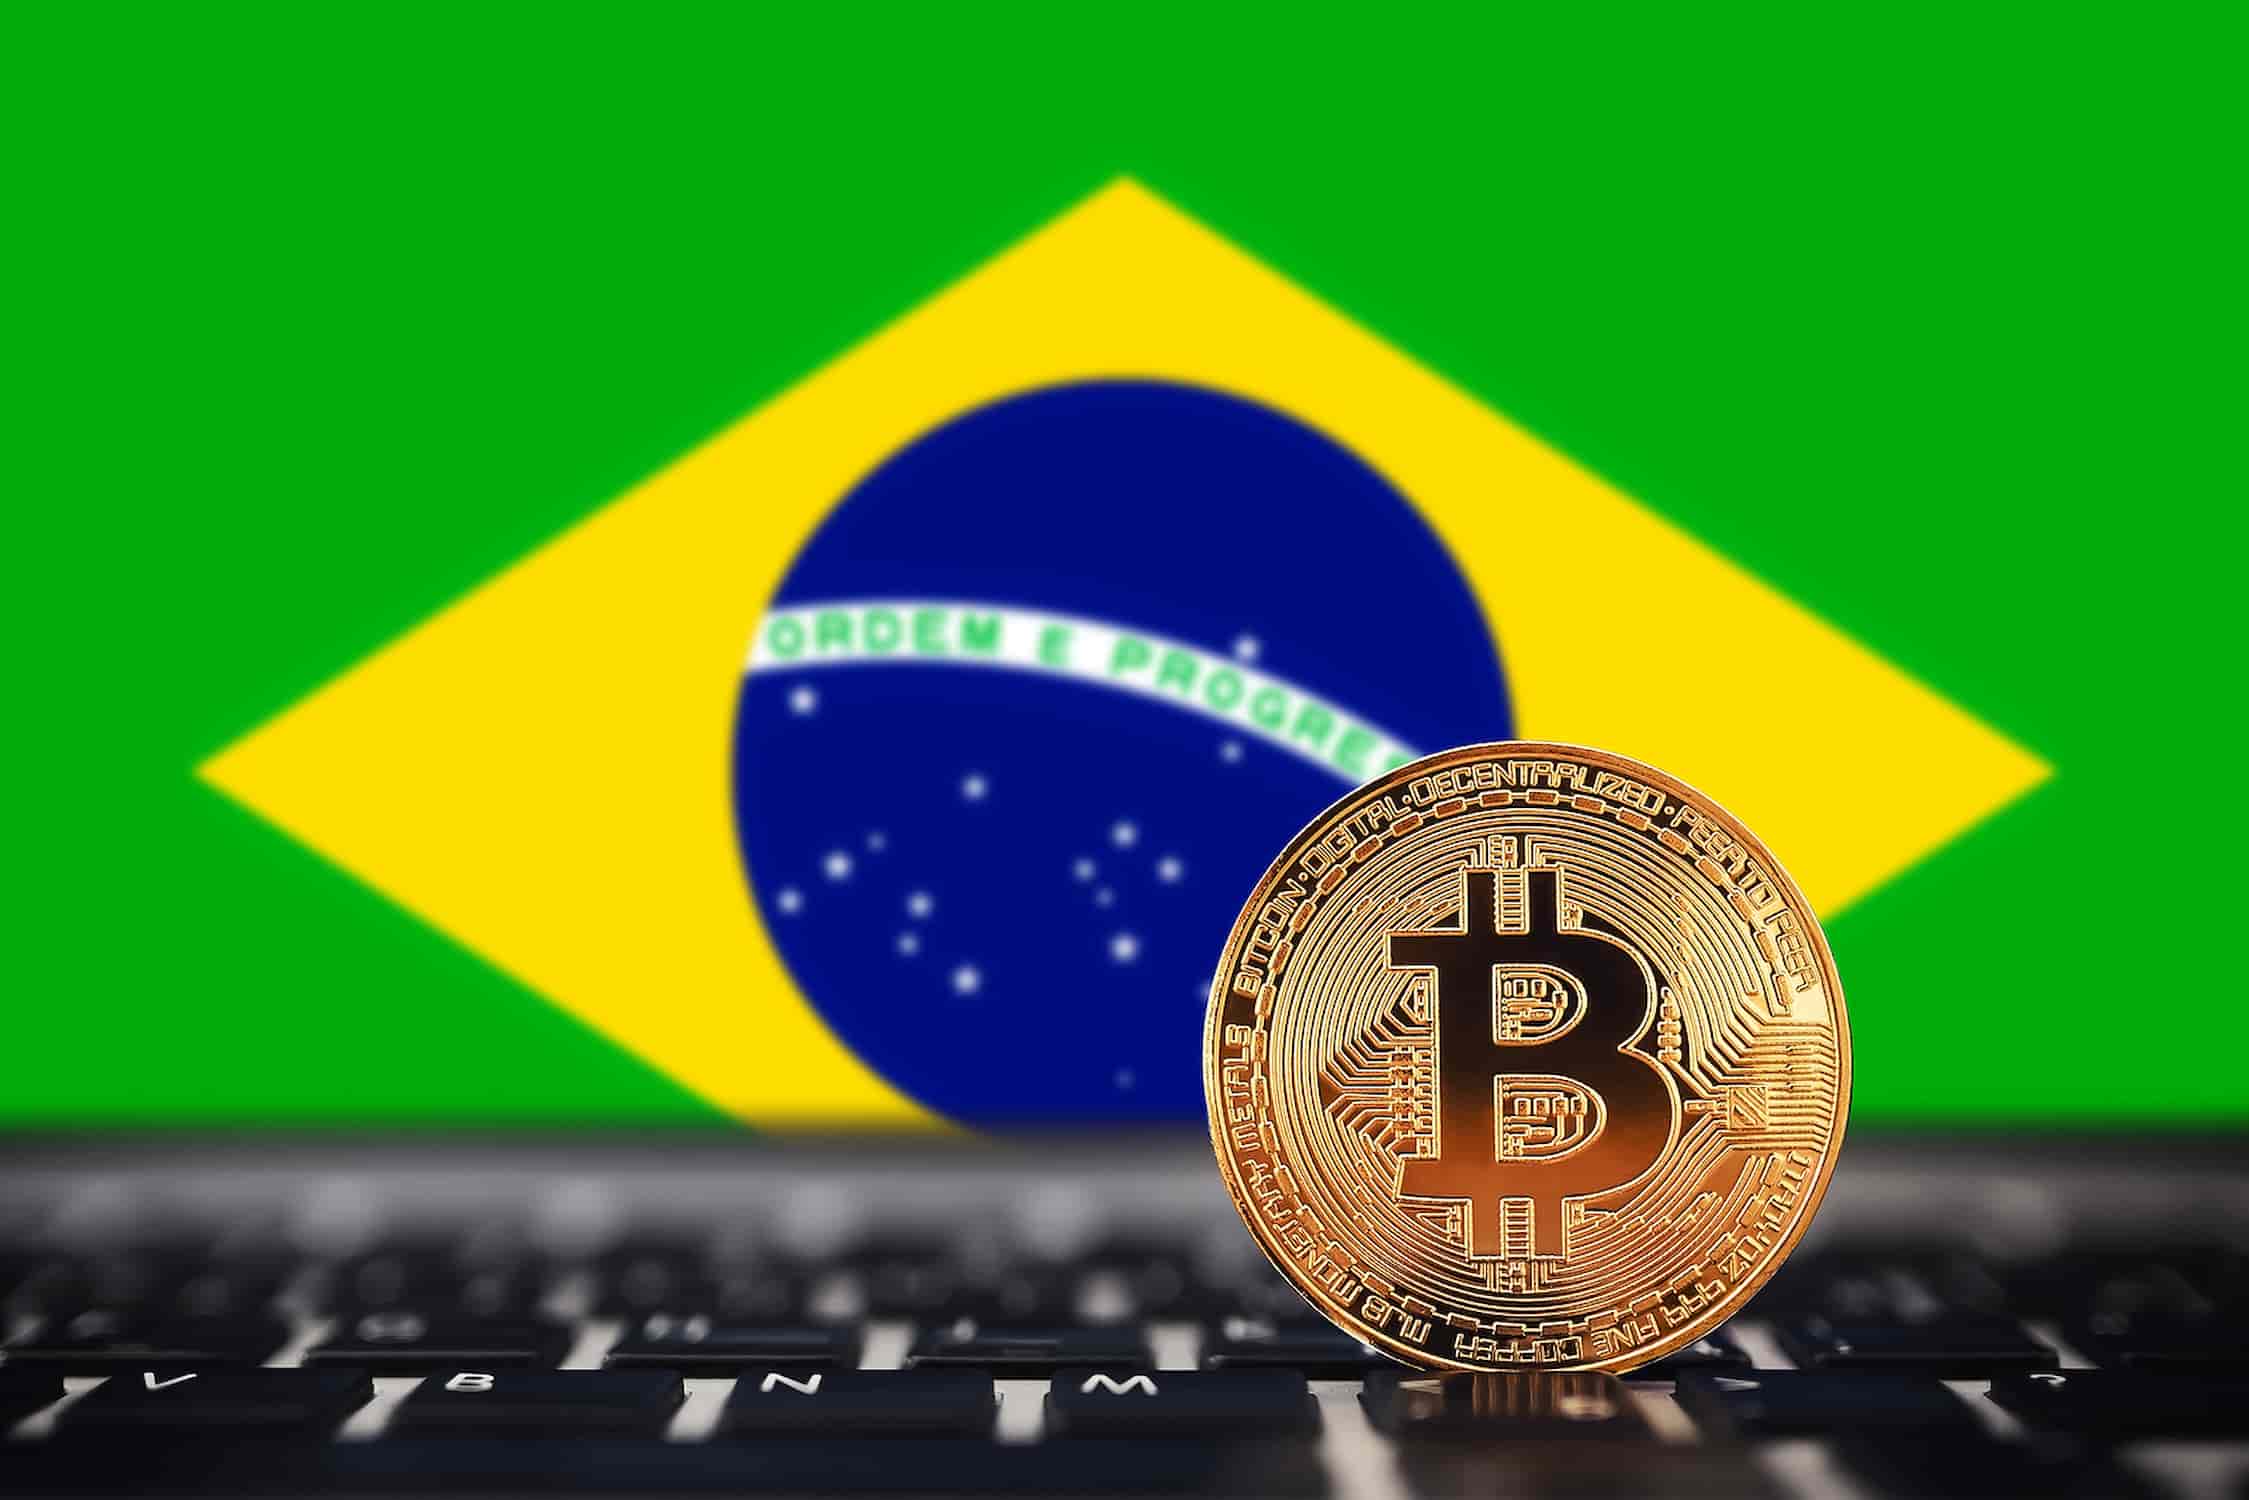 Guerra das exchanges de bitcoin no Brasil